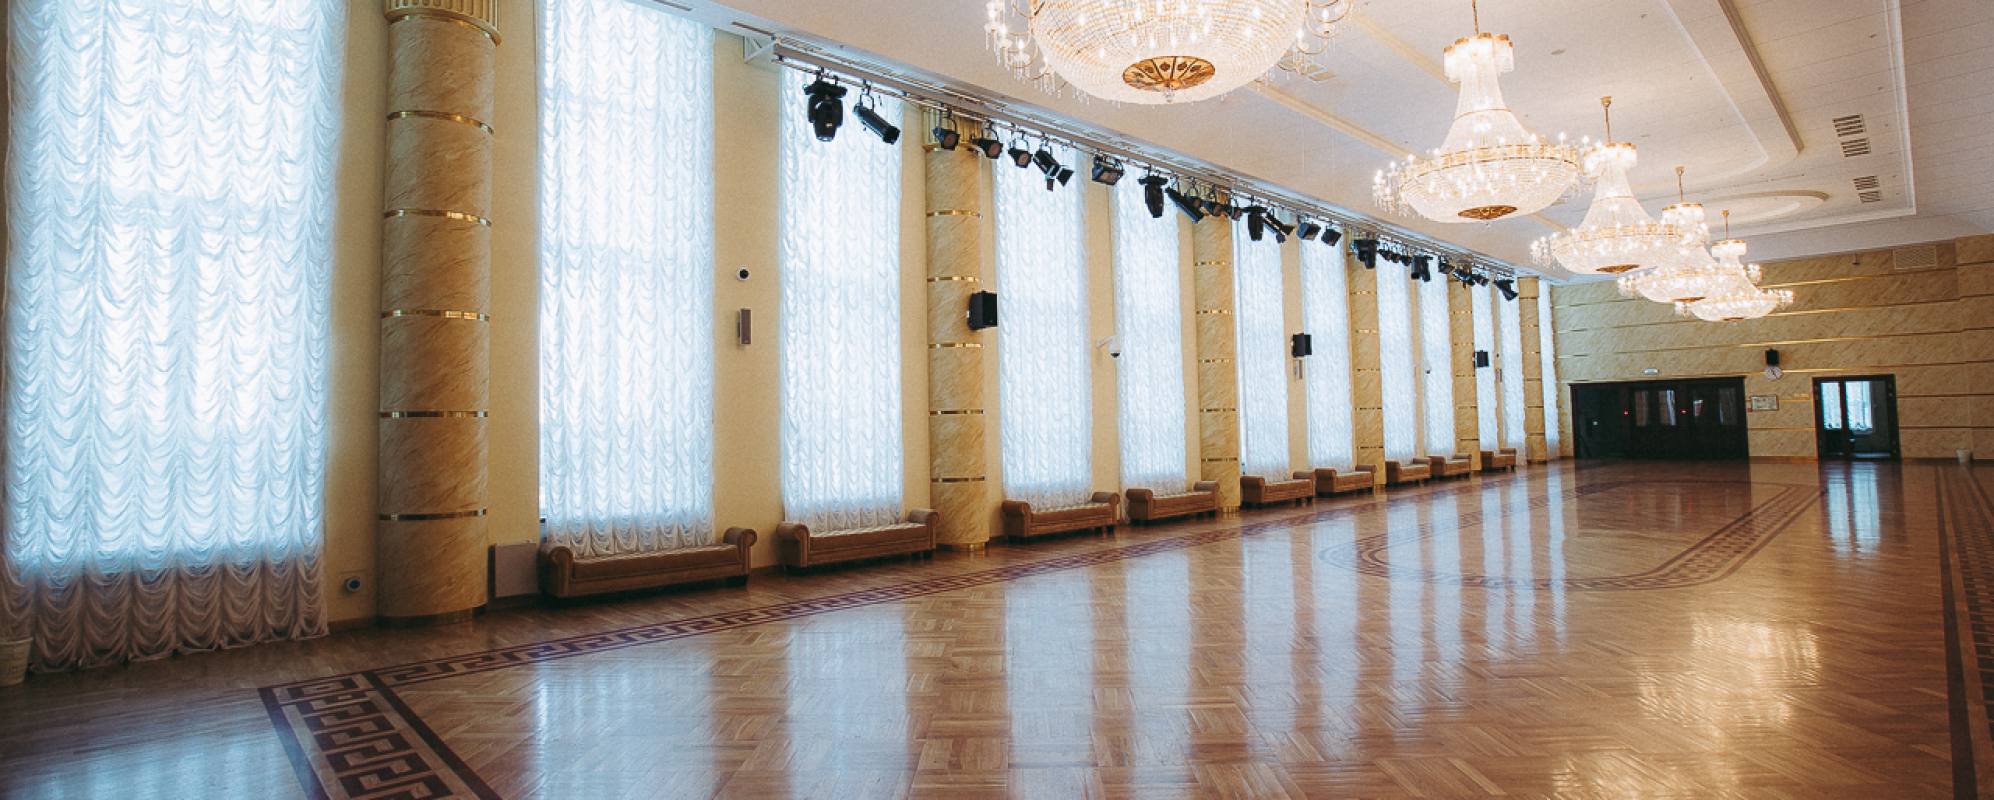 Фотографии концертного зала Танцевальный зал  Дворца культуры Нефтяник им. В.И. Муравленко